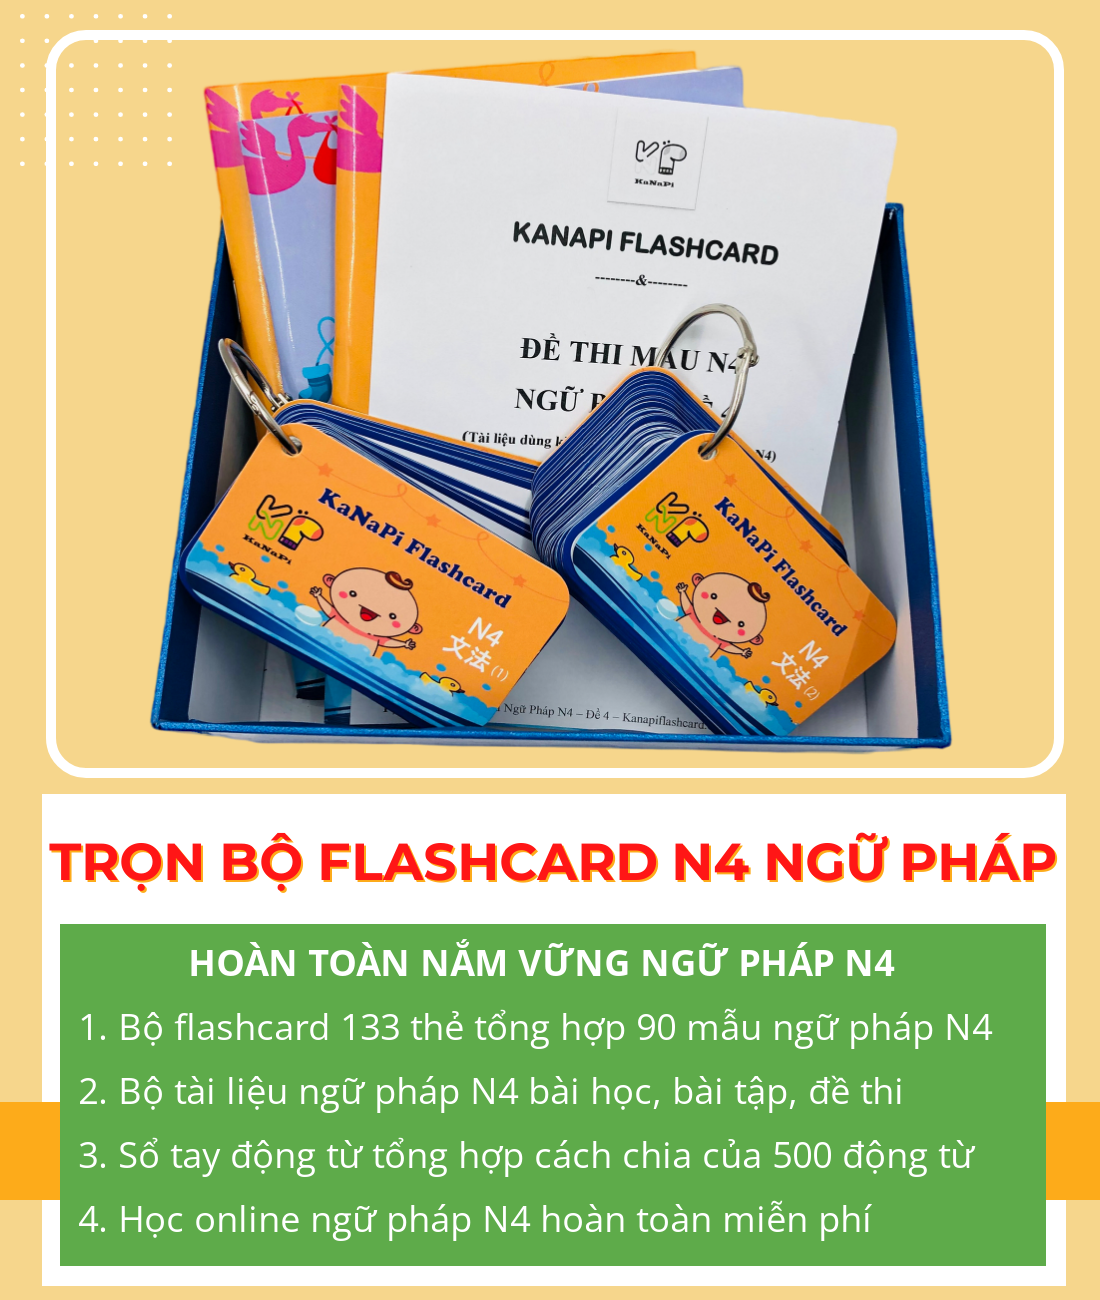 Lifestyle designTrọn Bộ Flashcards N4 Ngữ Pháp (Thẻ flashcard + Bộ tài liệu ngữ pháp N4 + Sổ tay động từ + Học Online) – Kanapi Flashcard